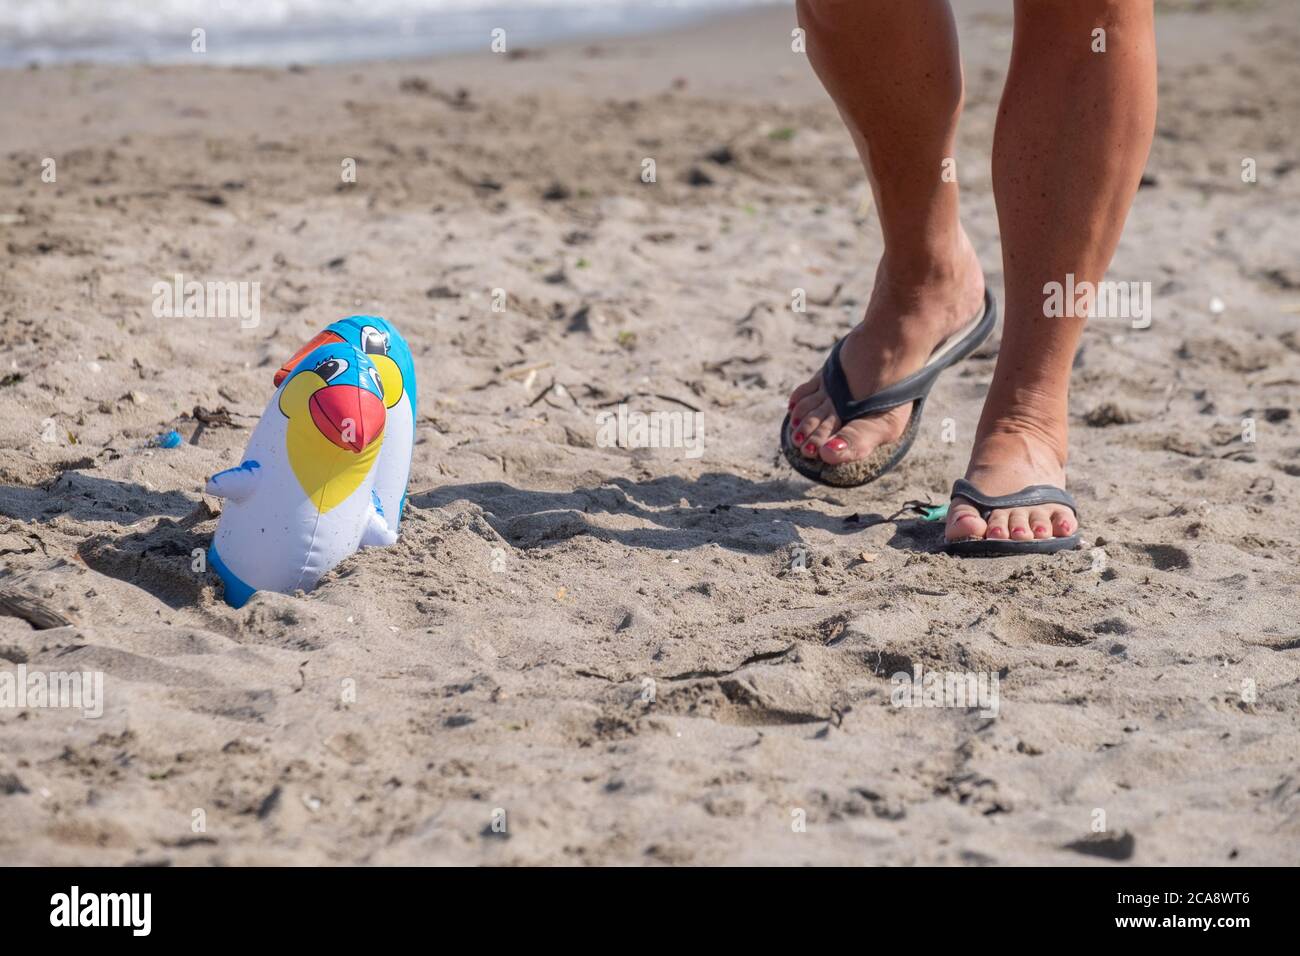 deux pélicans gonflables, sur le sable de la plage. À côté d'une personne marchant dans des chaussons Banque D'Images